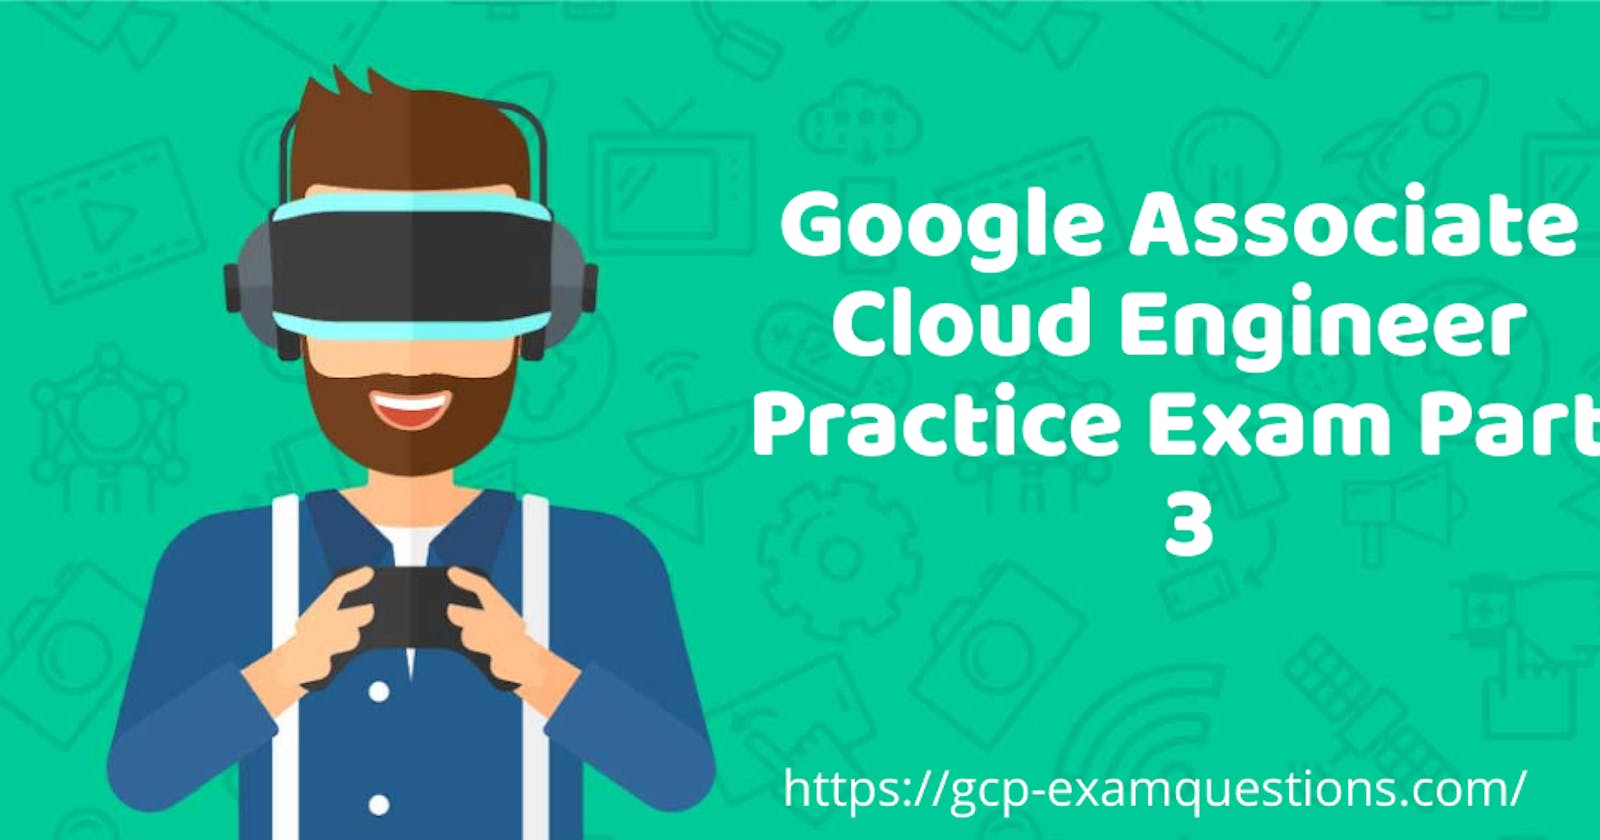 Google Associate Cloud Engineer Practice Exam Part 3